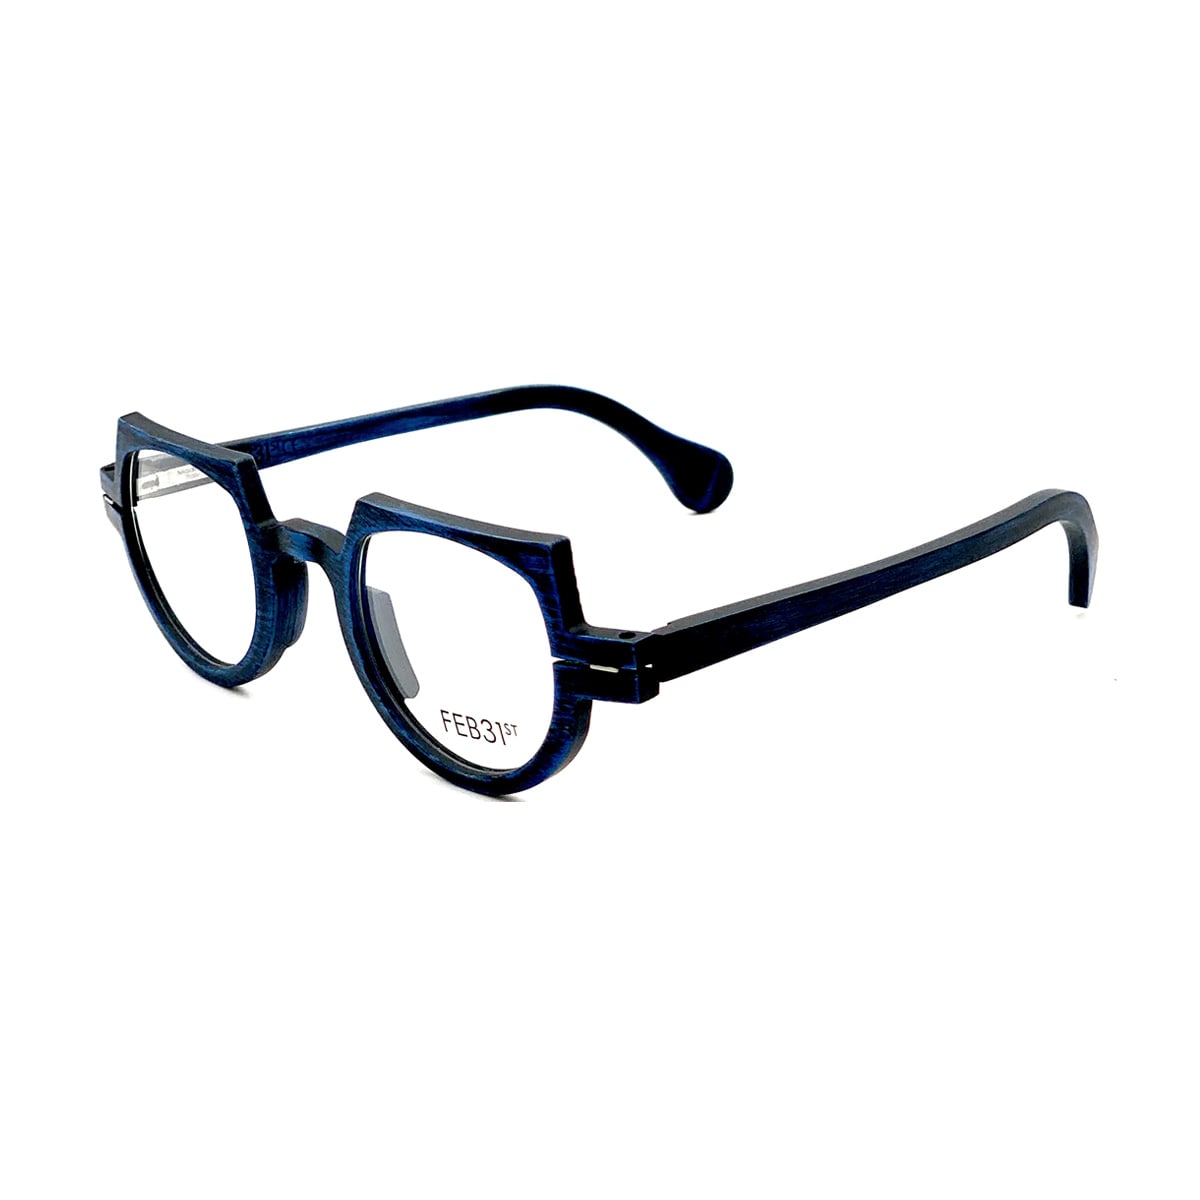 Feb31st Lewis Blu Glasses